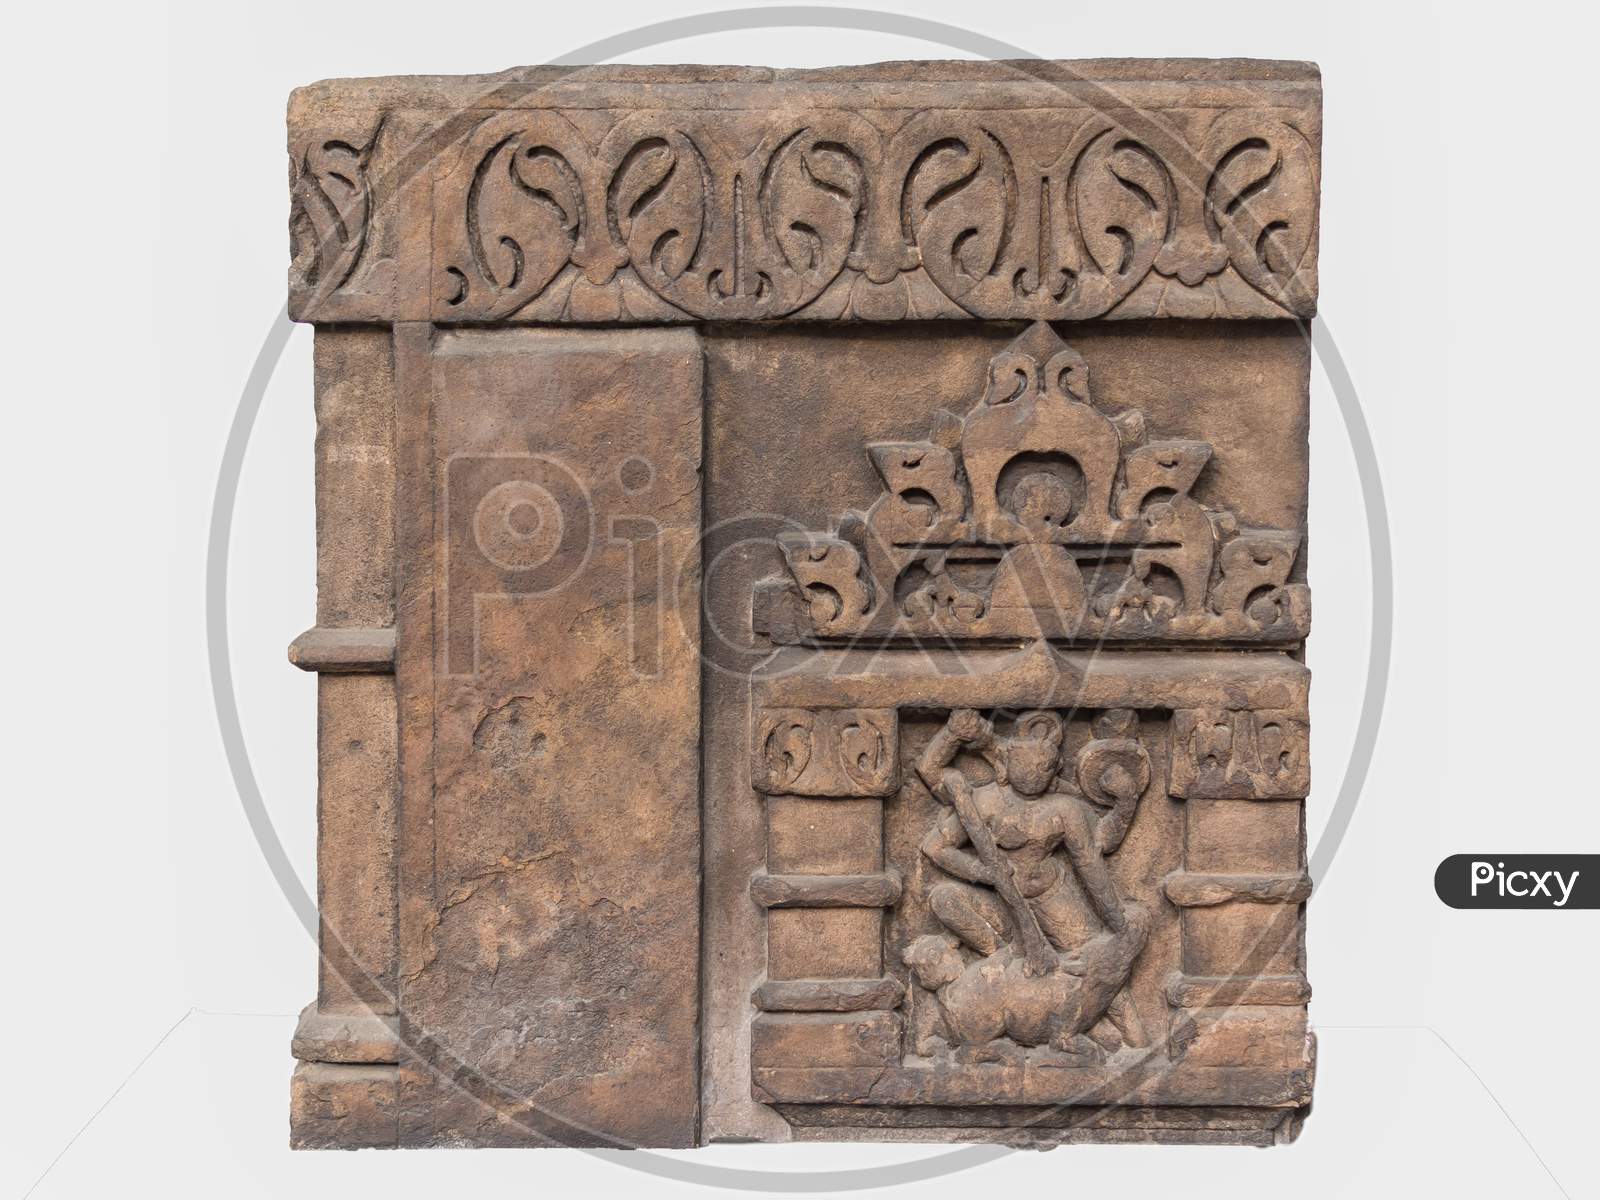 Archaeological Sculpture Of Mahisasuramardini From Indian Mythology